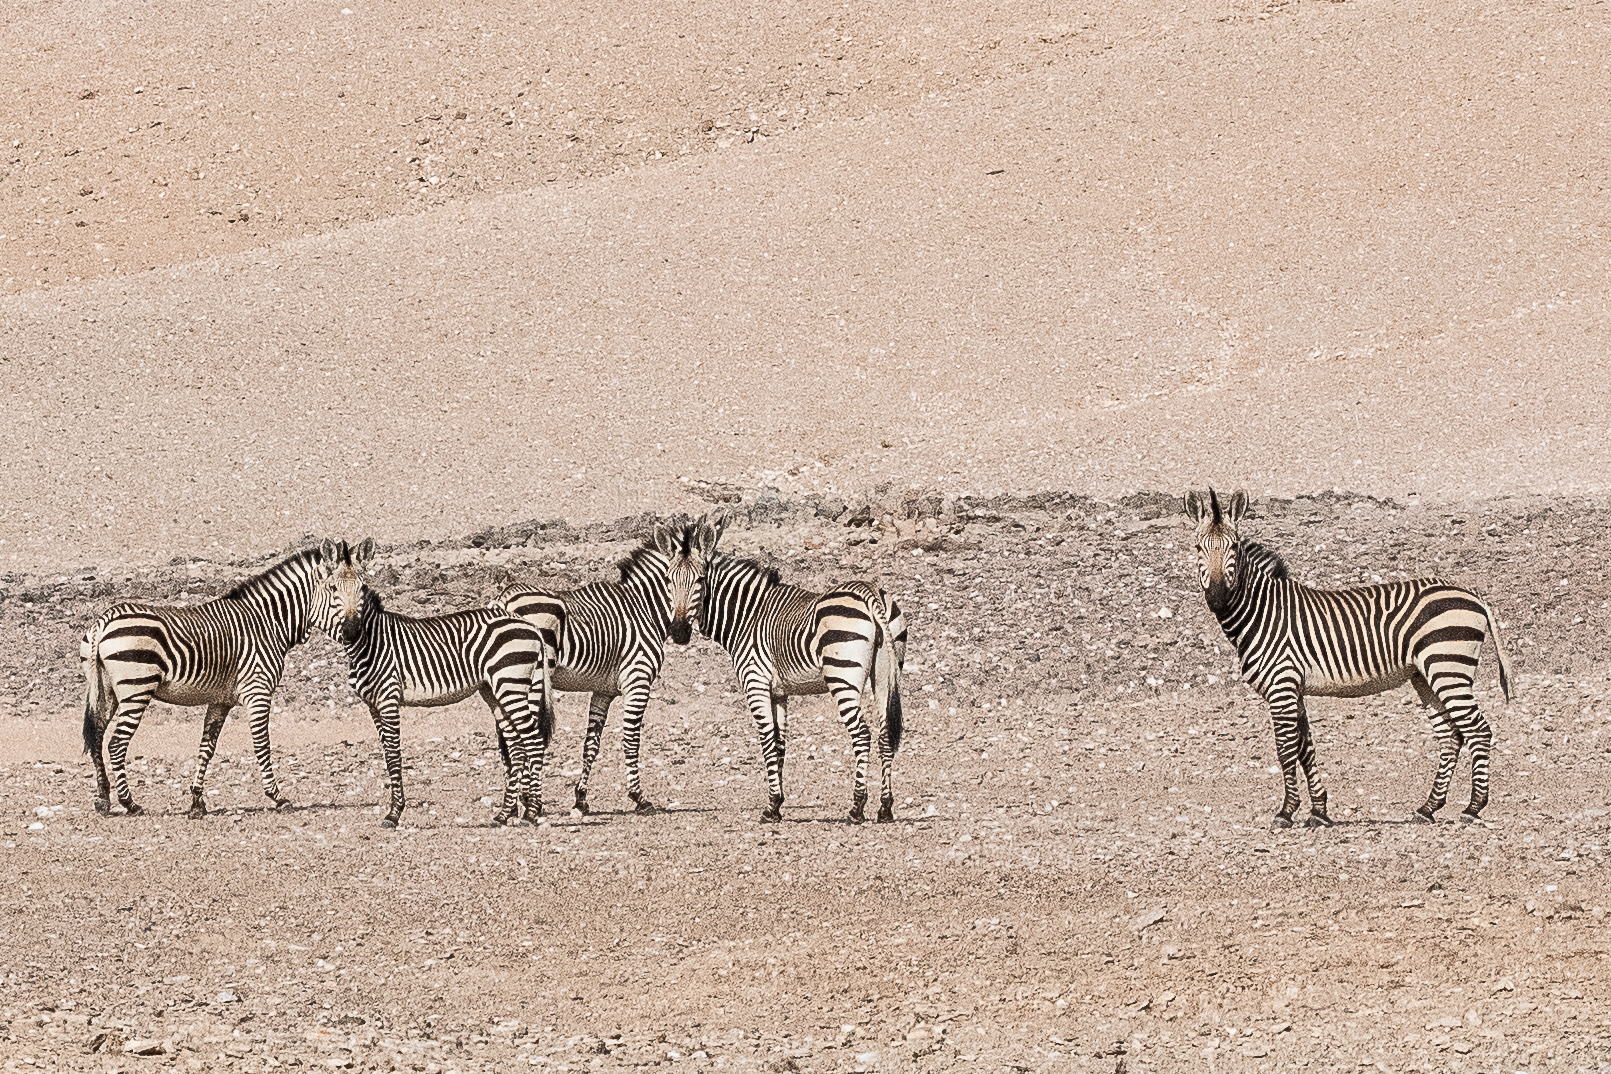 Zèbres de Hartman, sous-espèce du Zèbre de montagne (Hartmann's Mountain zebra, Equus zebra hartmanni), désert du Namib, Kaokoland, Région de Kunene, Namibie.